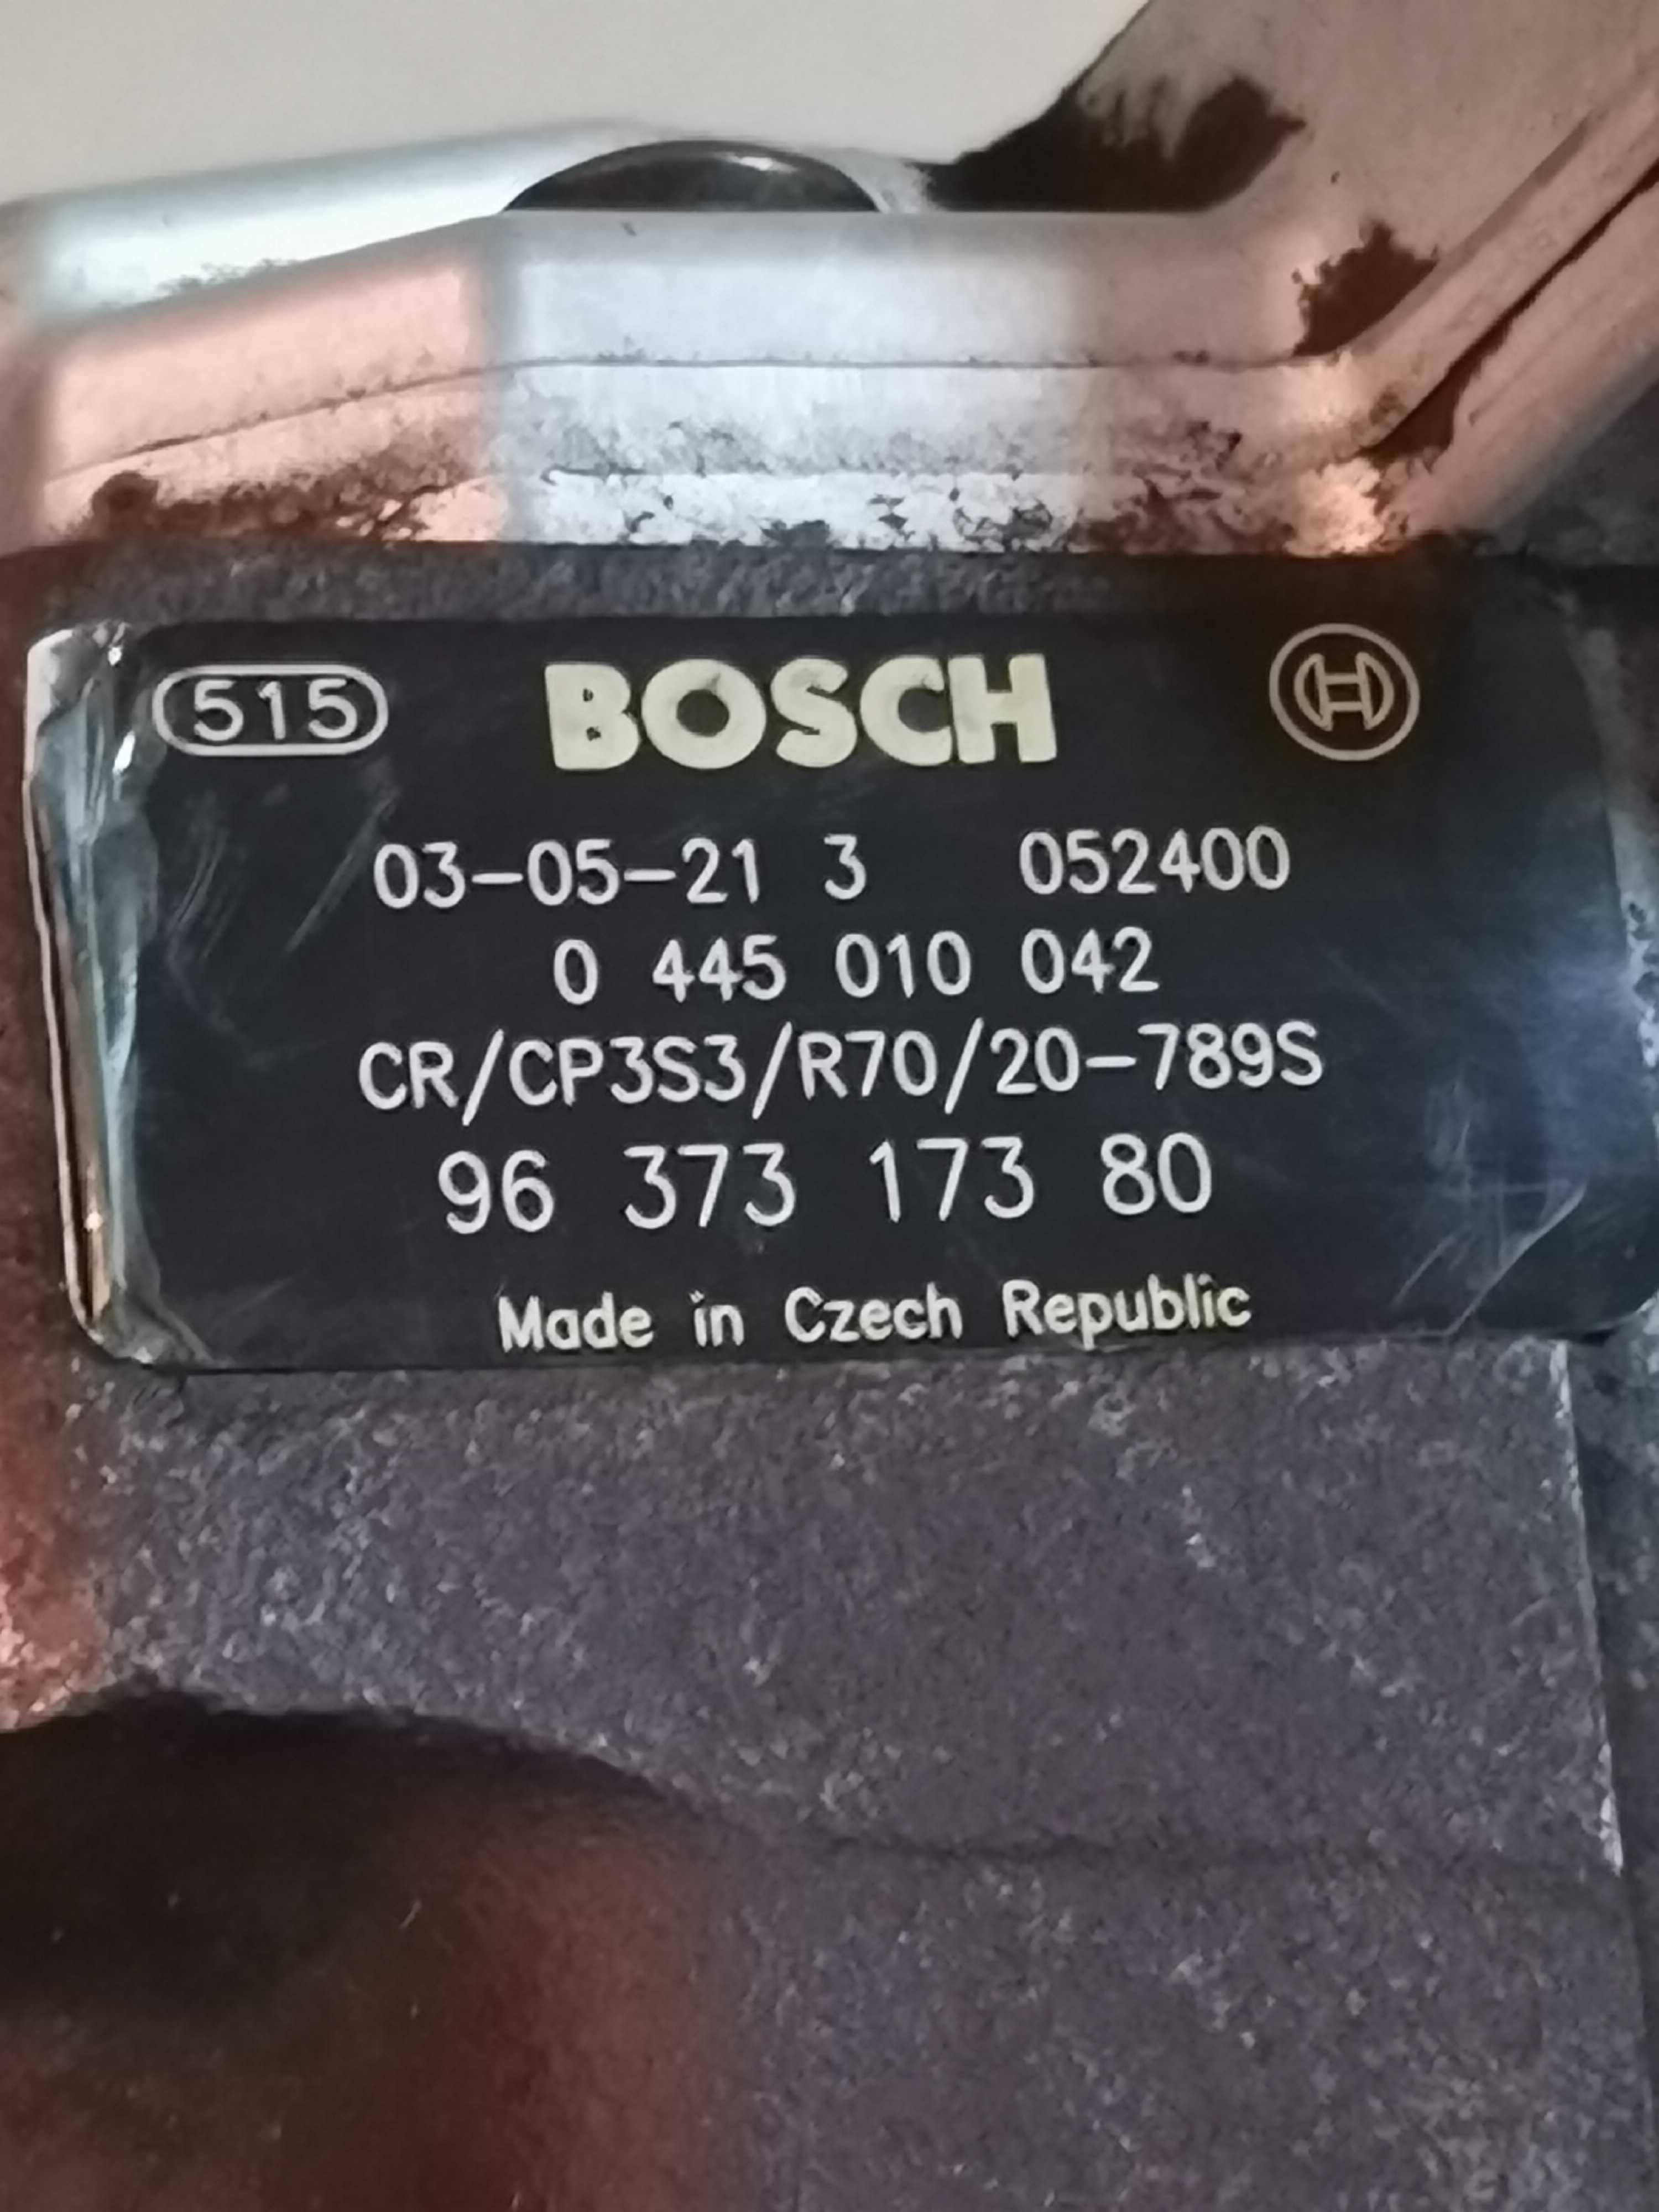 Bomba injeção de gasóleo marca Bosch, para peugeot 307